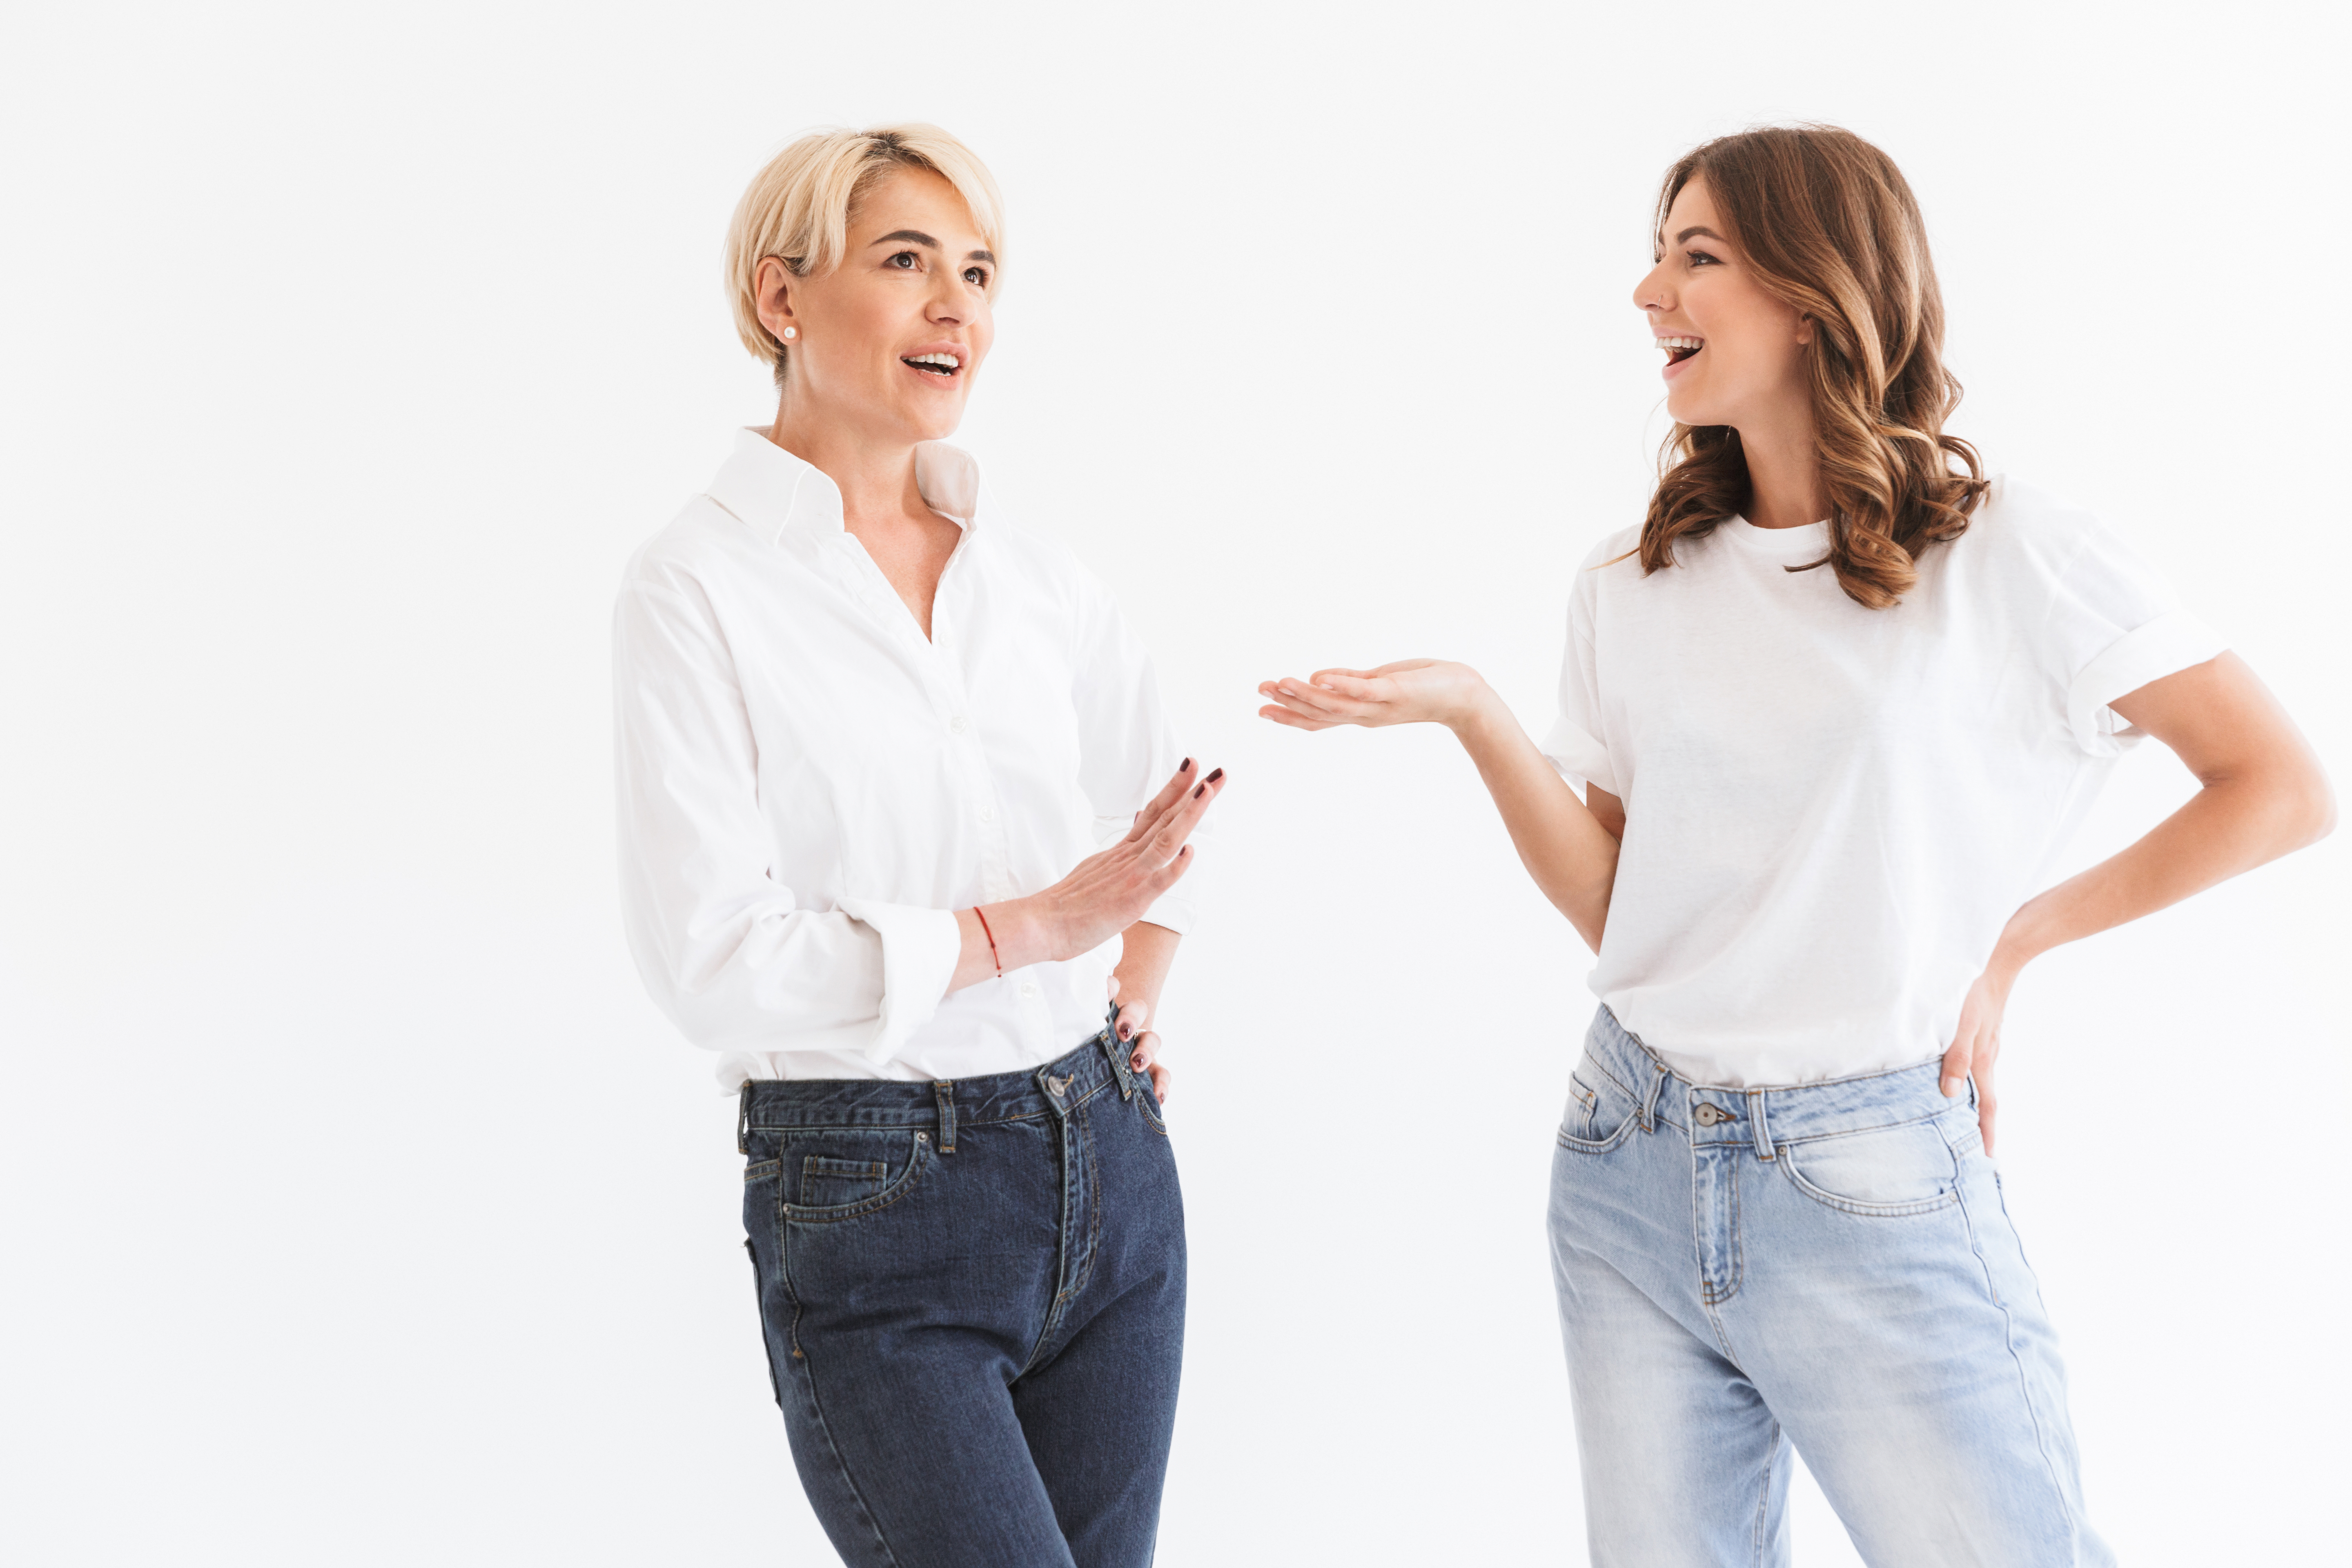 Two women talking | Source: Shutterstock